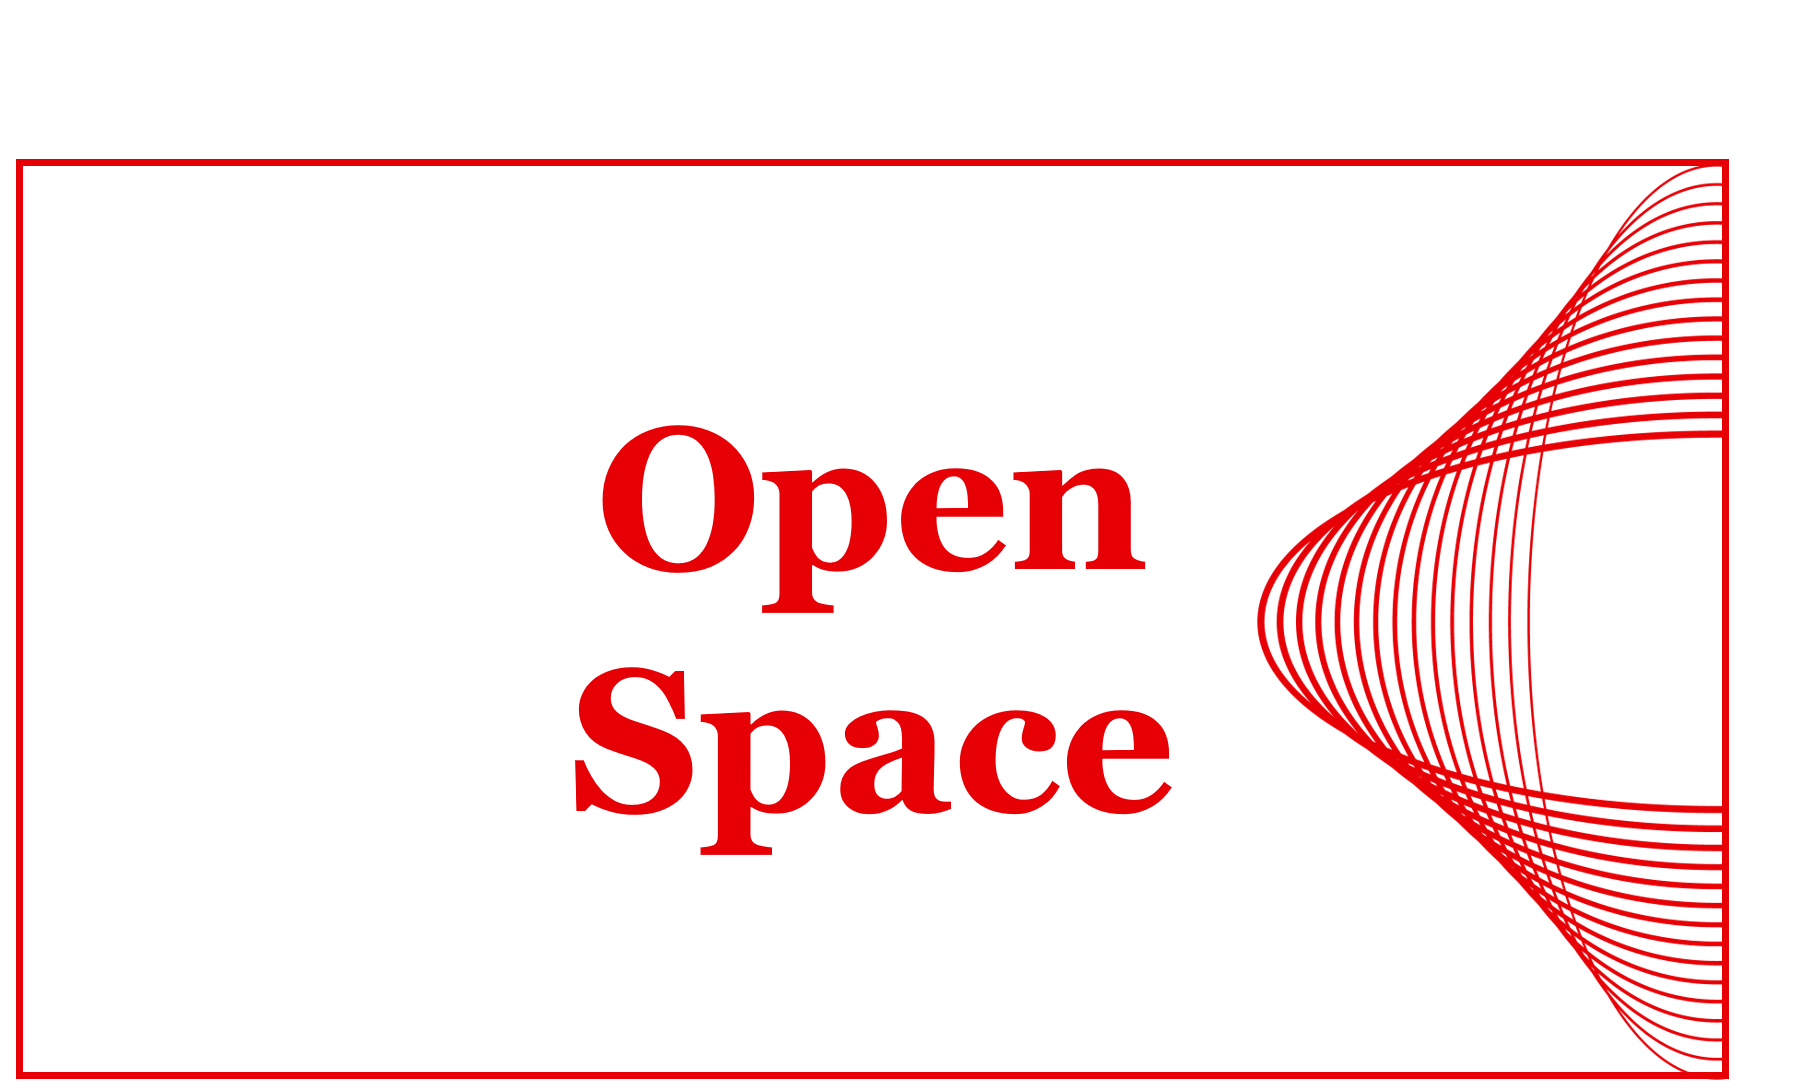 Klicken Sie auf das Bild, um eine Übersicht der Stände im Open Space zu erhalten.